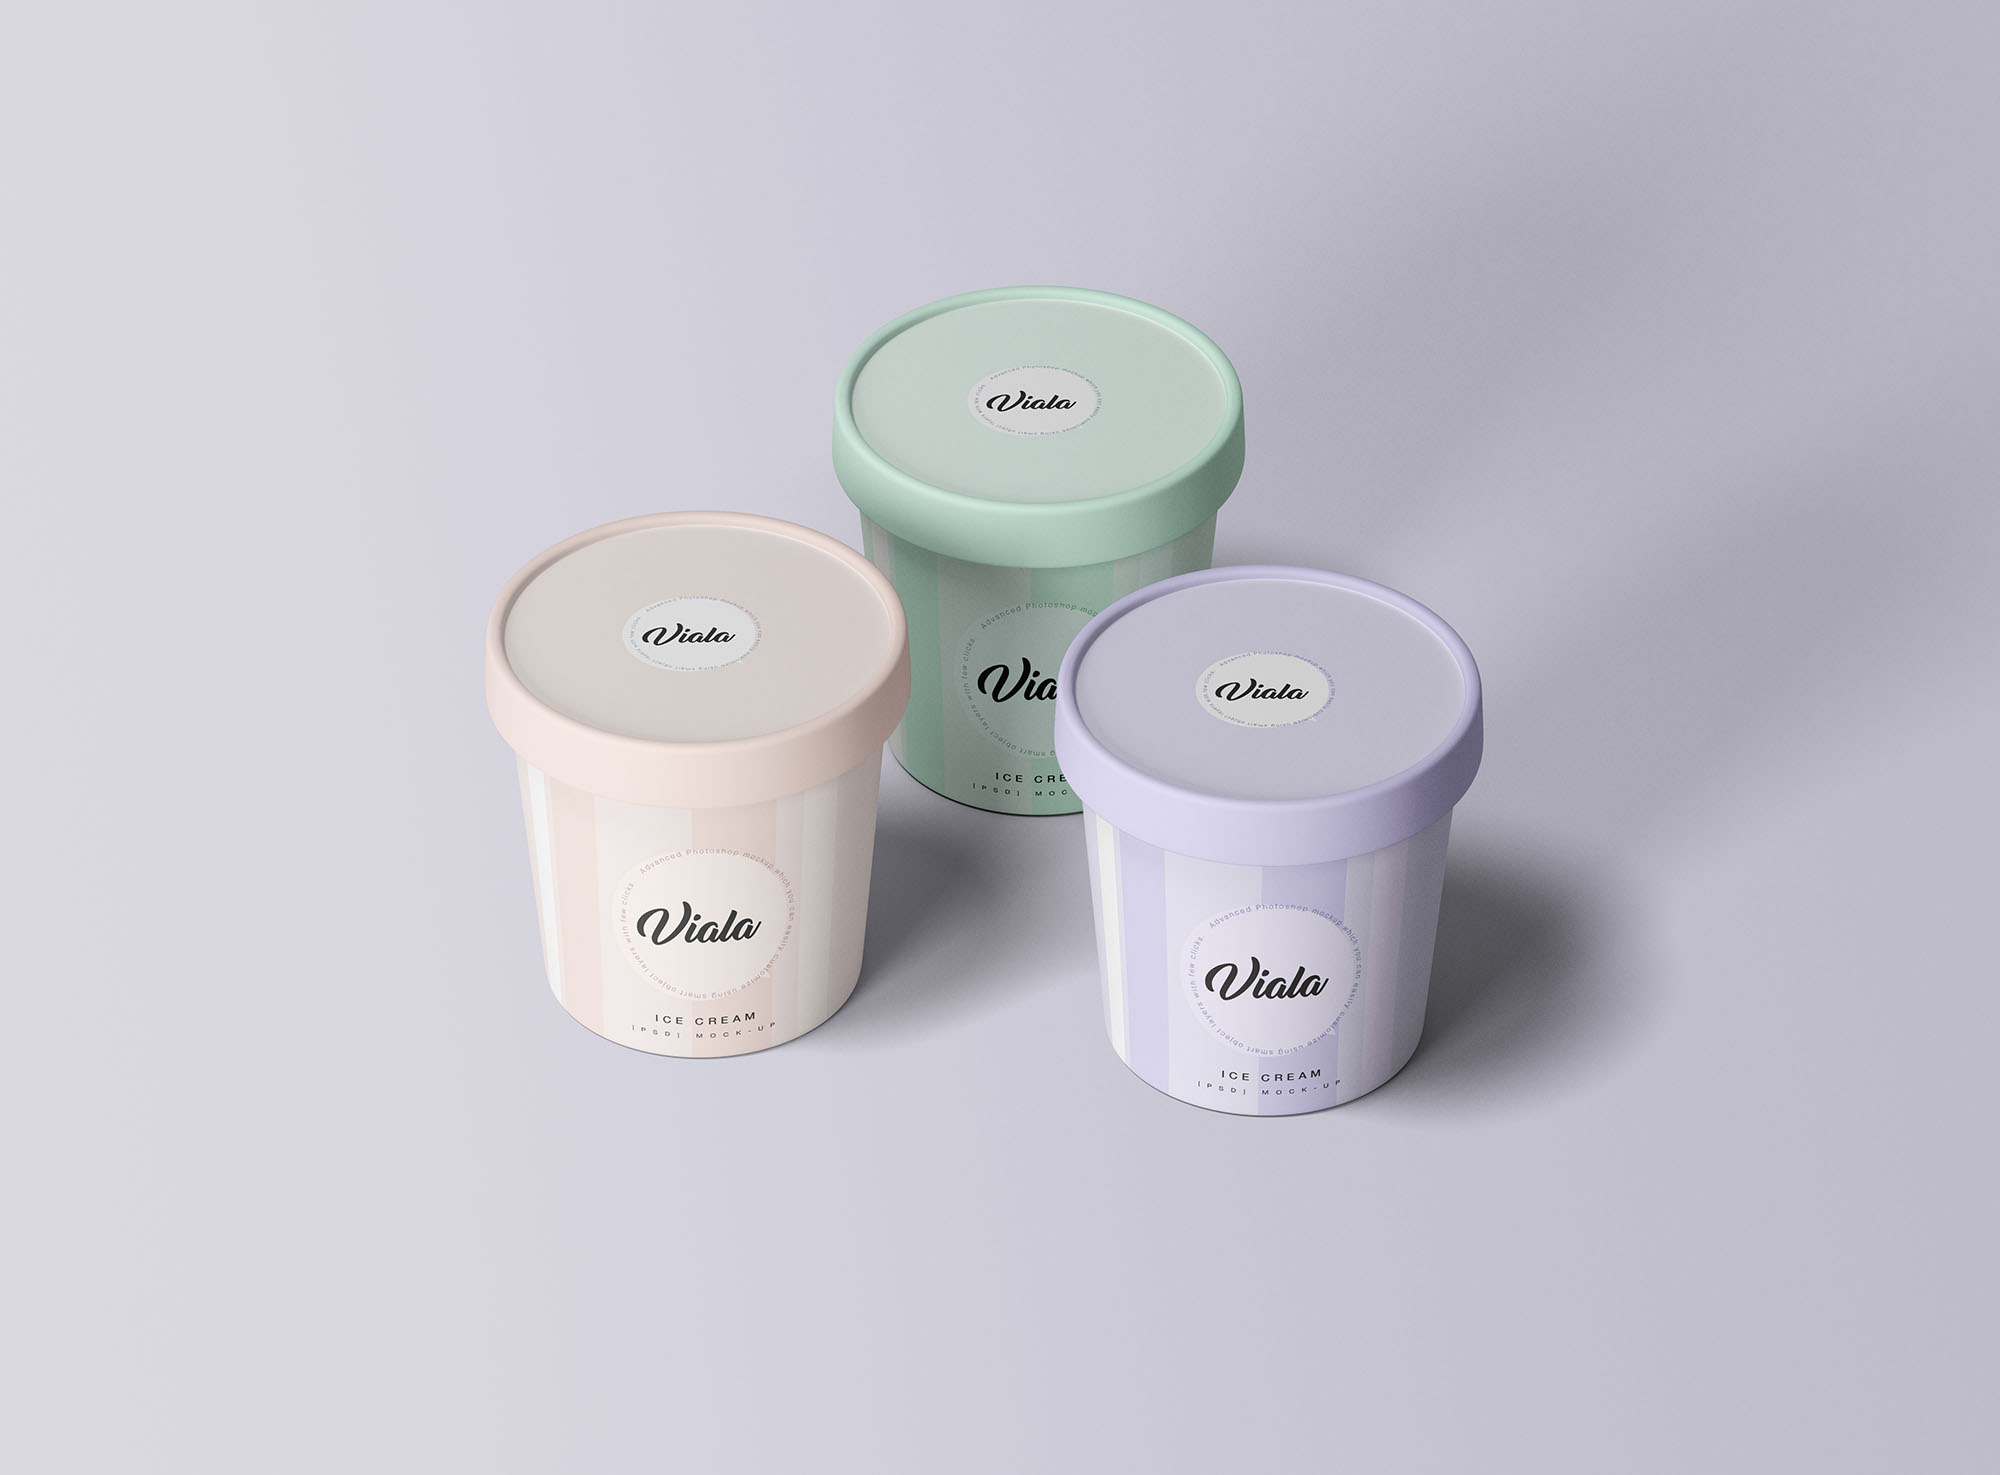 高档雪糕冰淇淋杯外观设计展示第一素材精选 3 Ice Cream Cups Mockup插图